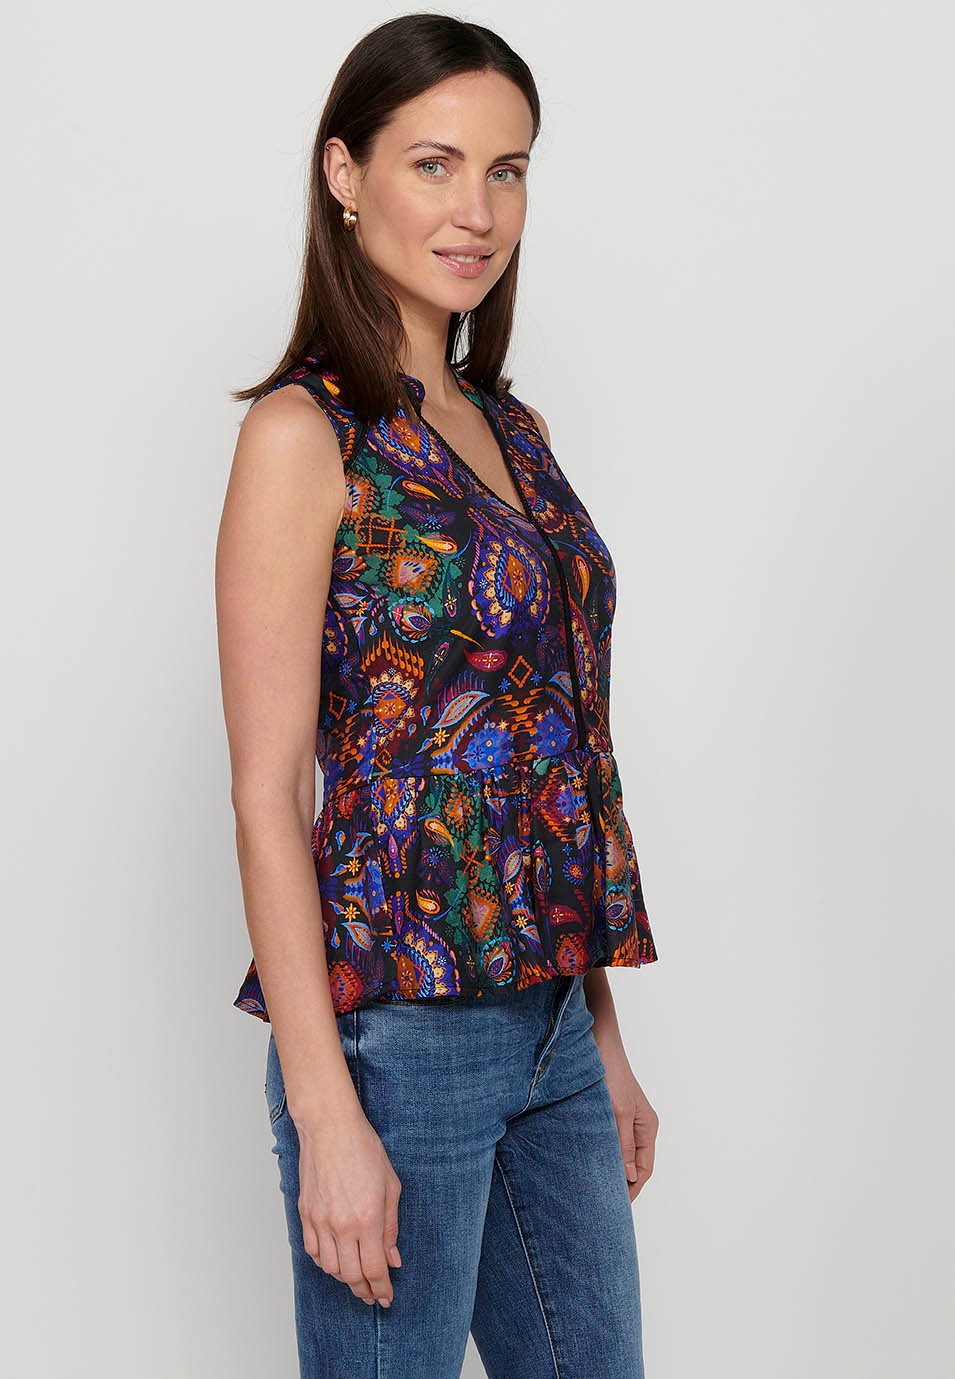 Sleeveless blouse, V-neckline, multicolored floral print for women